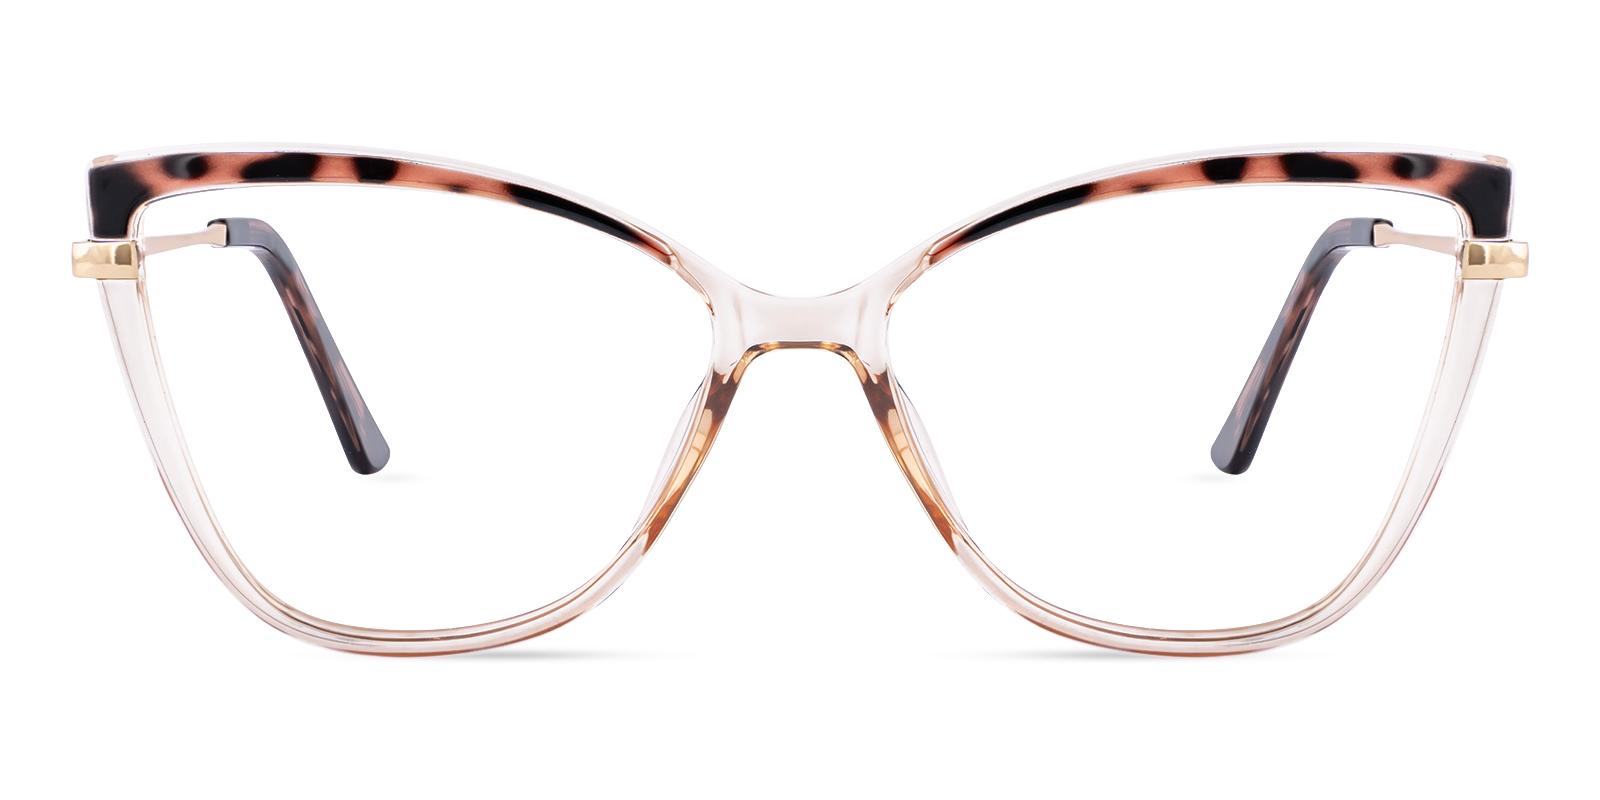 Coffer Tortoise TR Eyeglasses , SpringHinges , UniversalBridgeFit Frames from ABBE Glasses